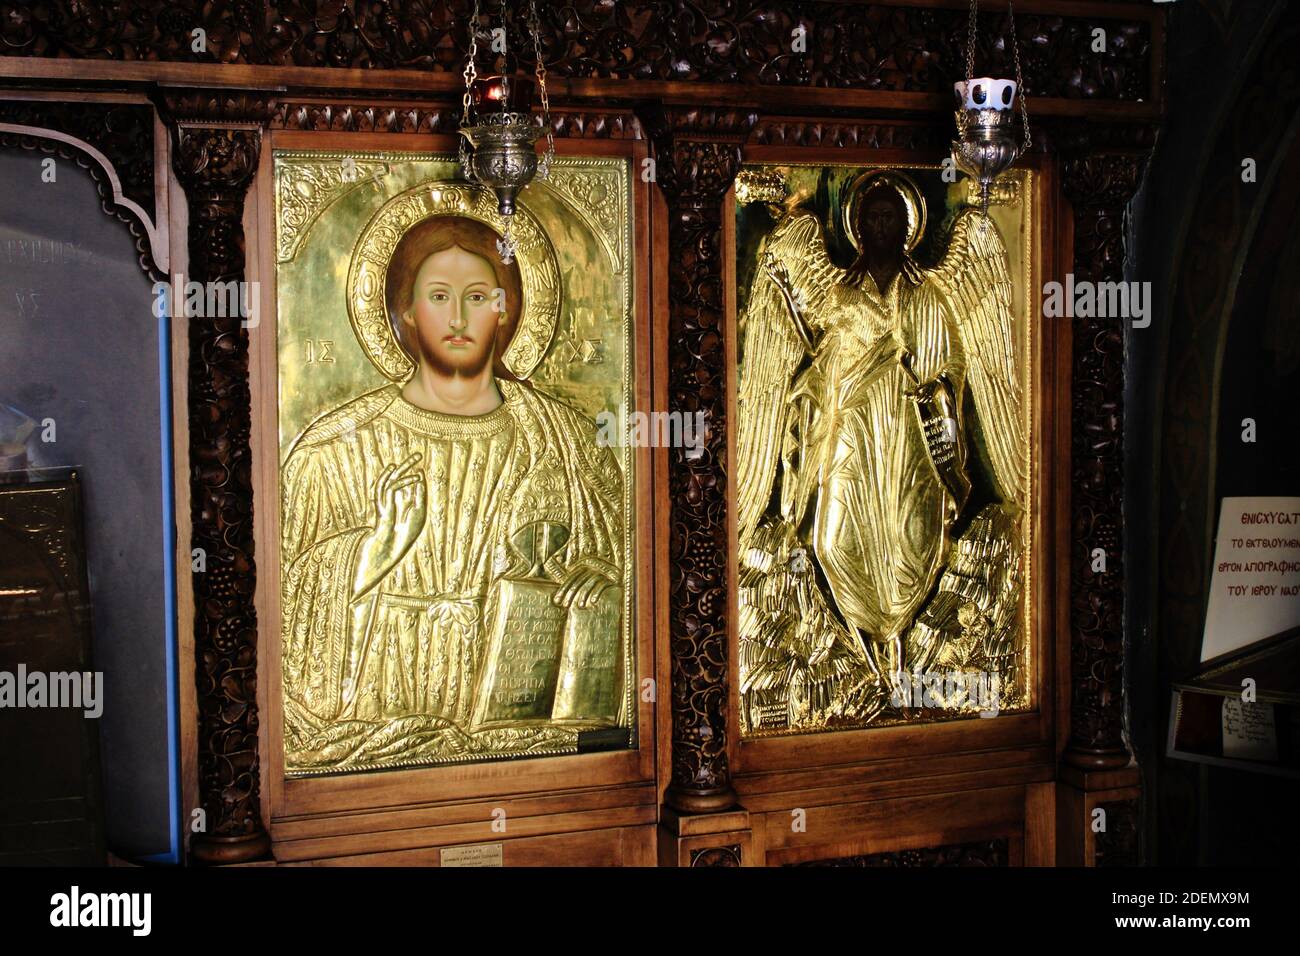 Icona di Gesù Cristo artigianale e coperto d'oro all'interno di una chiesa cristiana ortodossa ad Atene, Grecia, marzo 12 2020. Foto Stock